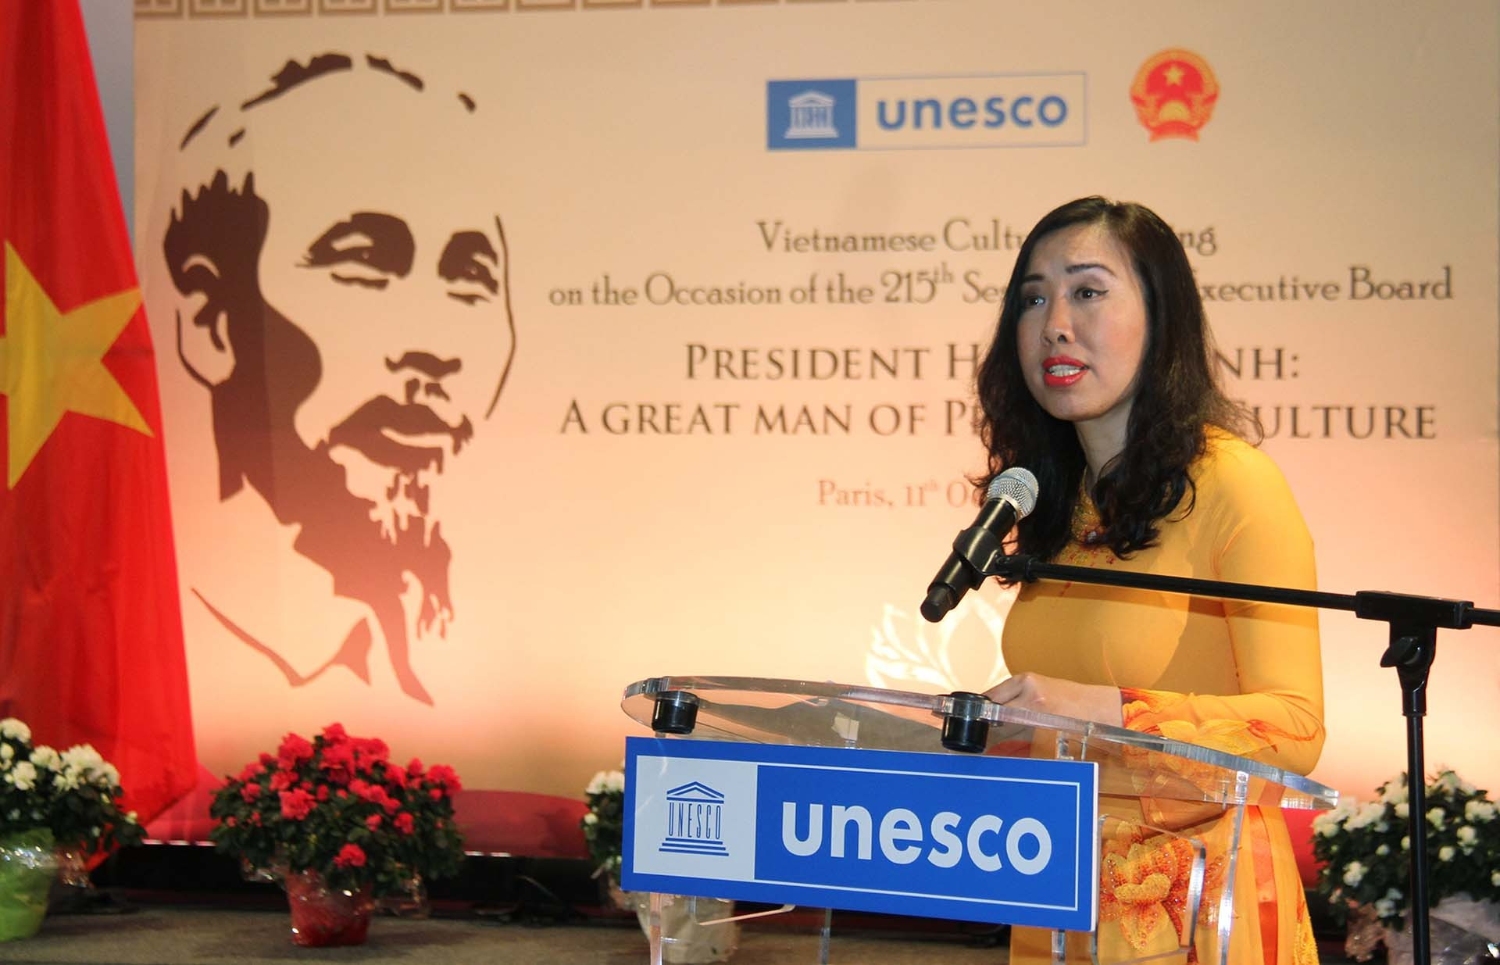 Bà Lê Thị Thu Hằng phát biểu tại lễ kỷ niệm 35 năm tổ chức UNESCO thông qua Nghị quyết tôn vinh Chủ tịch Hồ Chí Minh